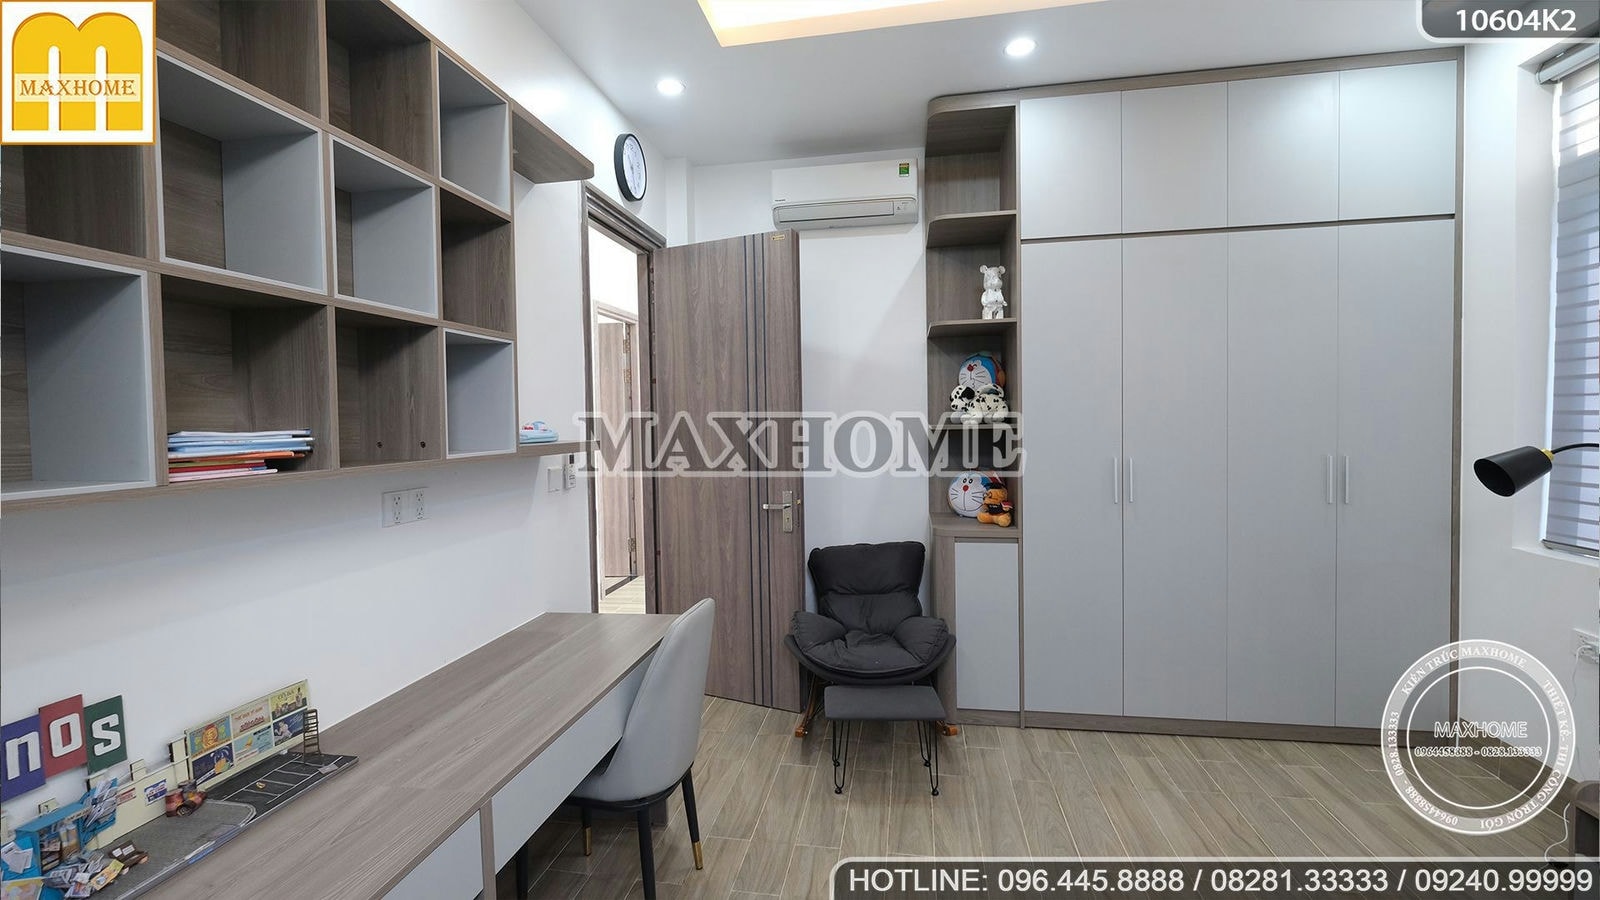 Hoàn thiện nội thất hiện đại cho biệt thự 2 tầng mái Nhật | MH02354